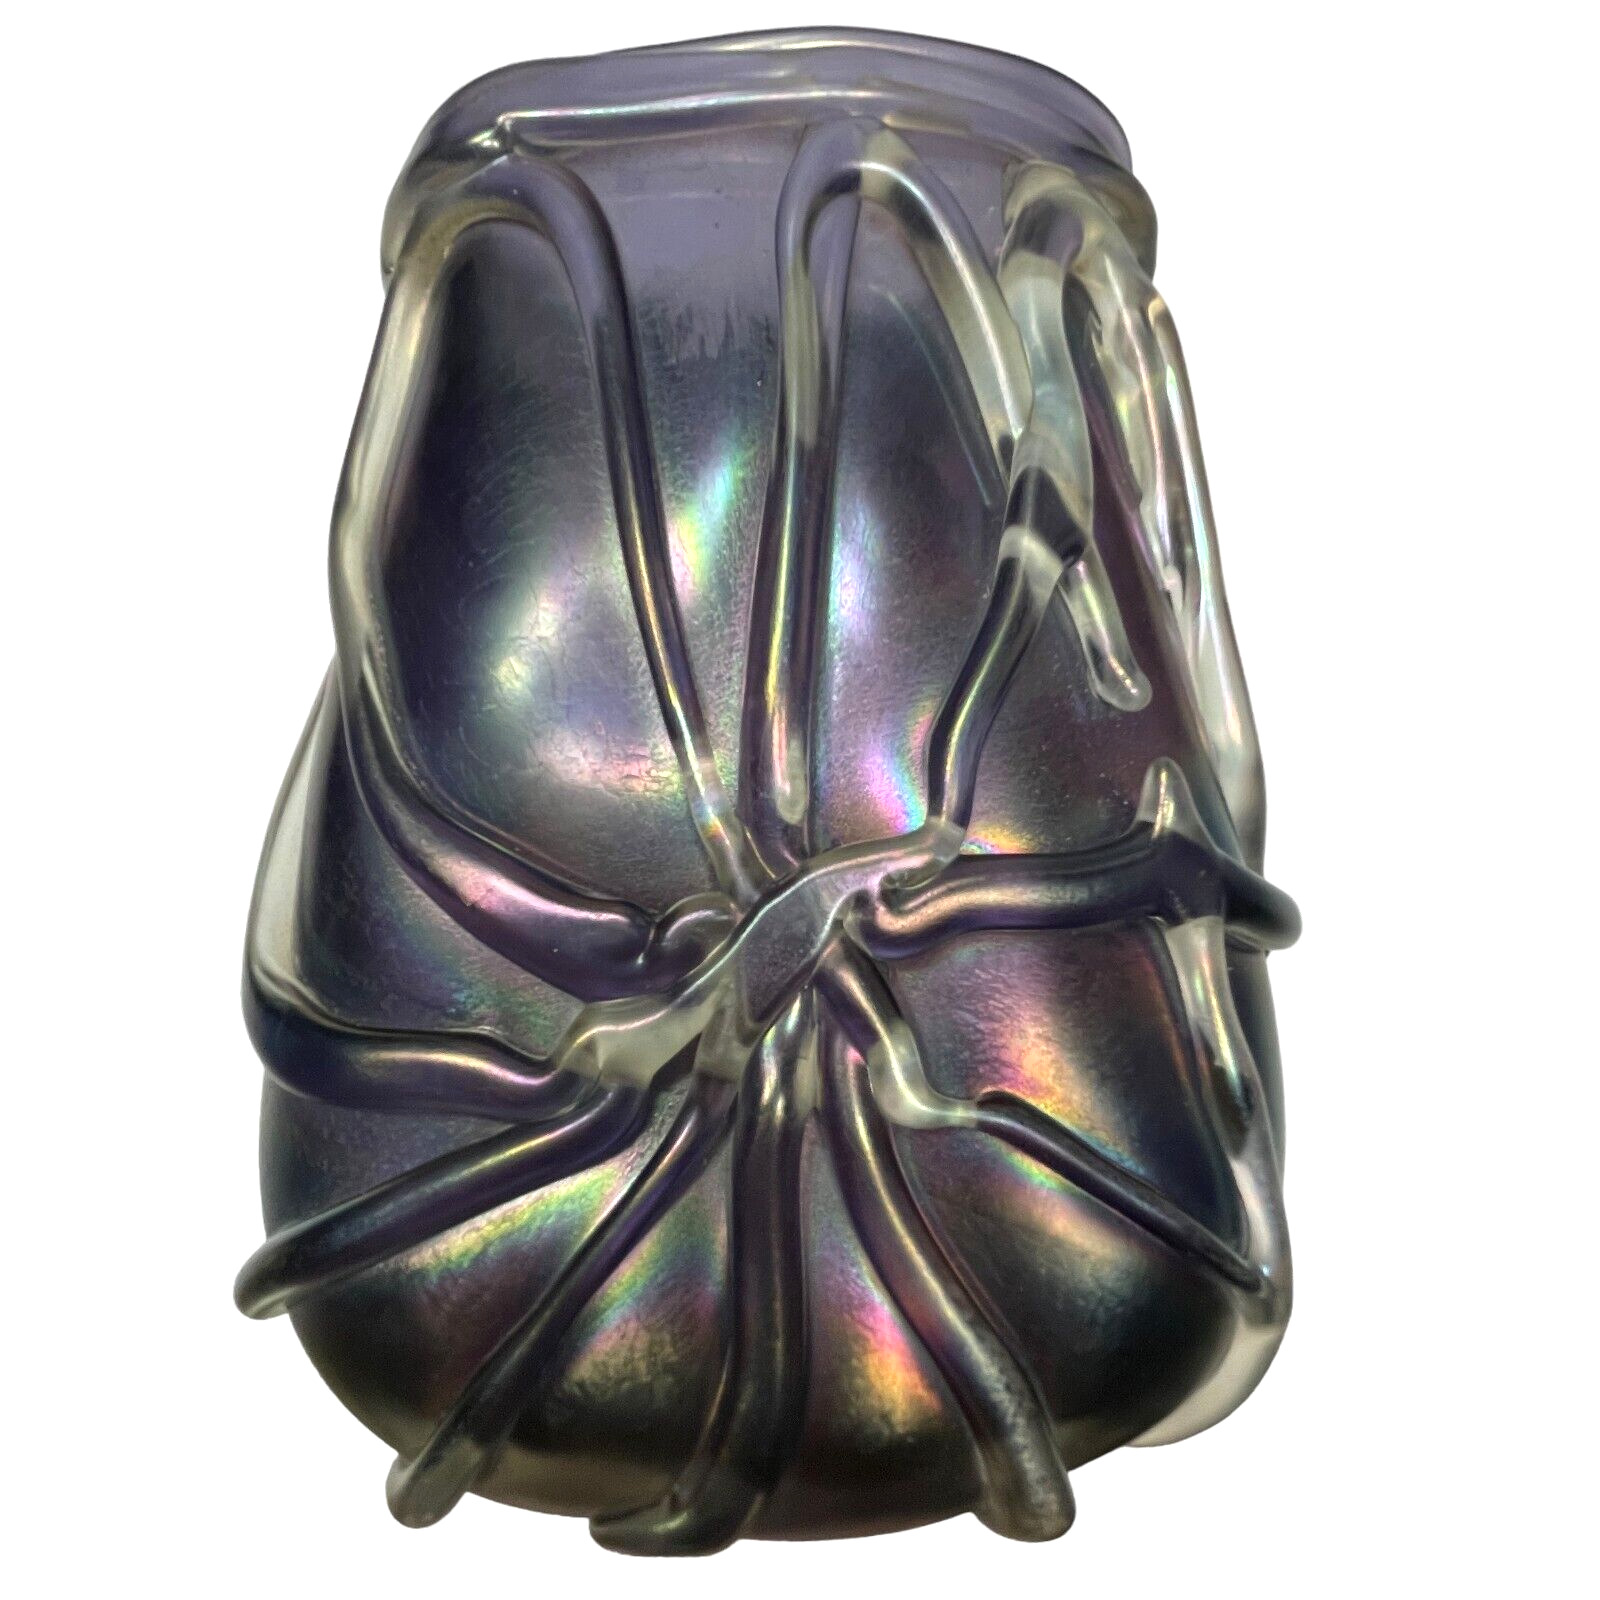 Mark Peiser American Art Glass Vase Rare Applied Glass on Iridescent Glass 1972